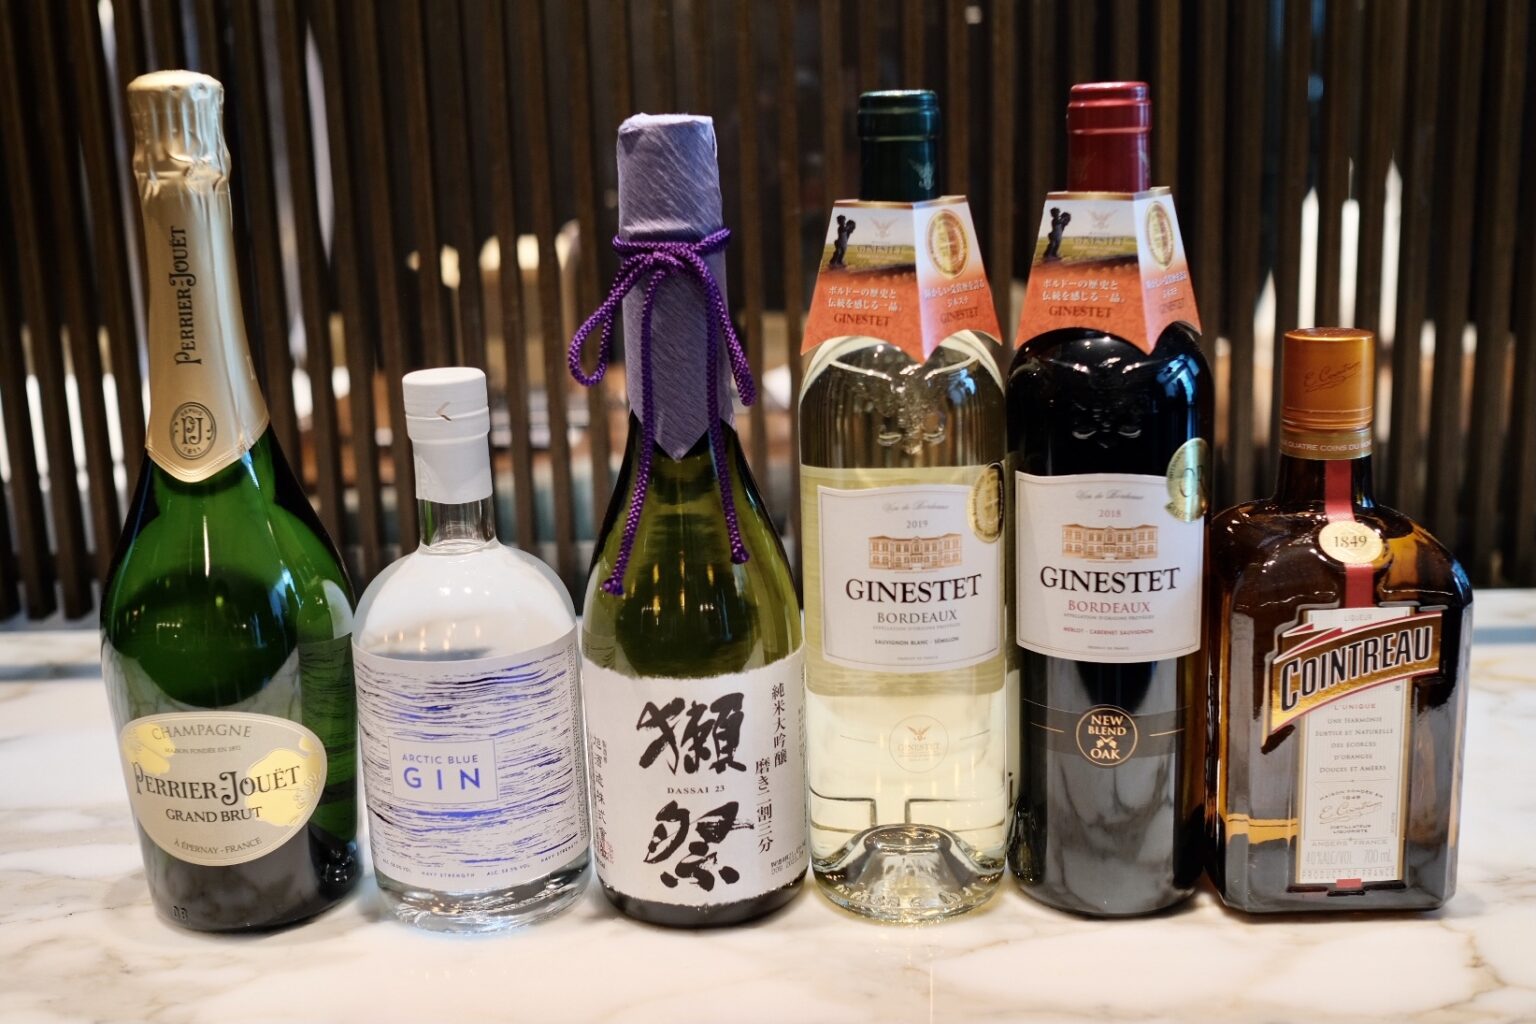 （左から提供された順番に）「N.V. Perrier-Jouët」「Arctic Blue Gin」「Dassai 23」「2019 Ginestet Bordeaux Blanc」「2018 Ginestet Bordeaux Rouge」「Cointreau」。